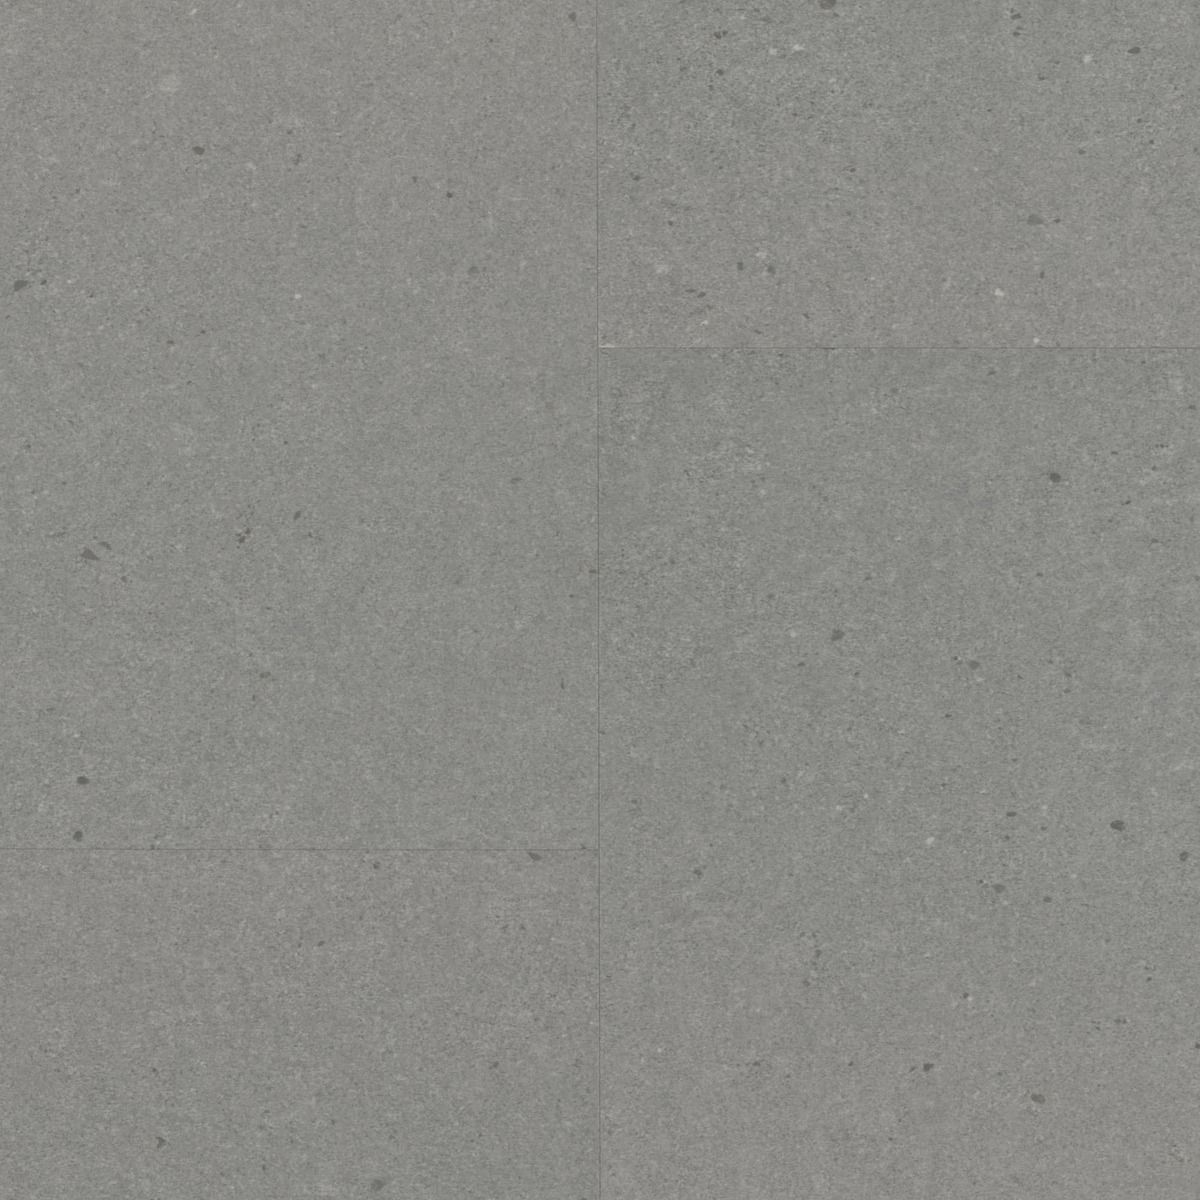 Vinylová podlaha Berry Alloc LIVE CL30 Vibrant stone gunmetal 3,8 mm 60001905 (bal.1,870 m2) - Siko - koupelny - kuchyně